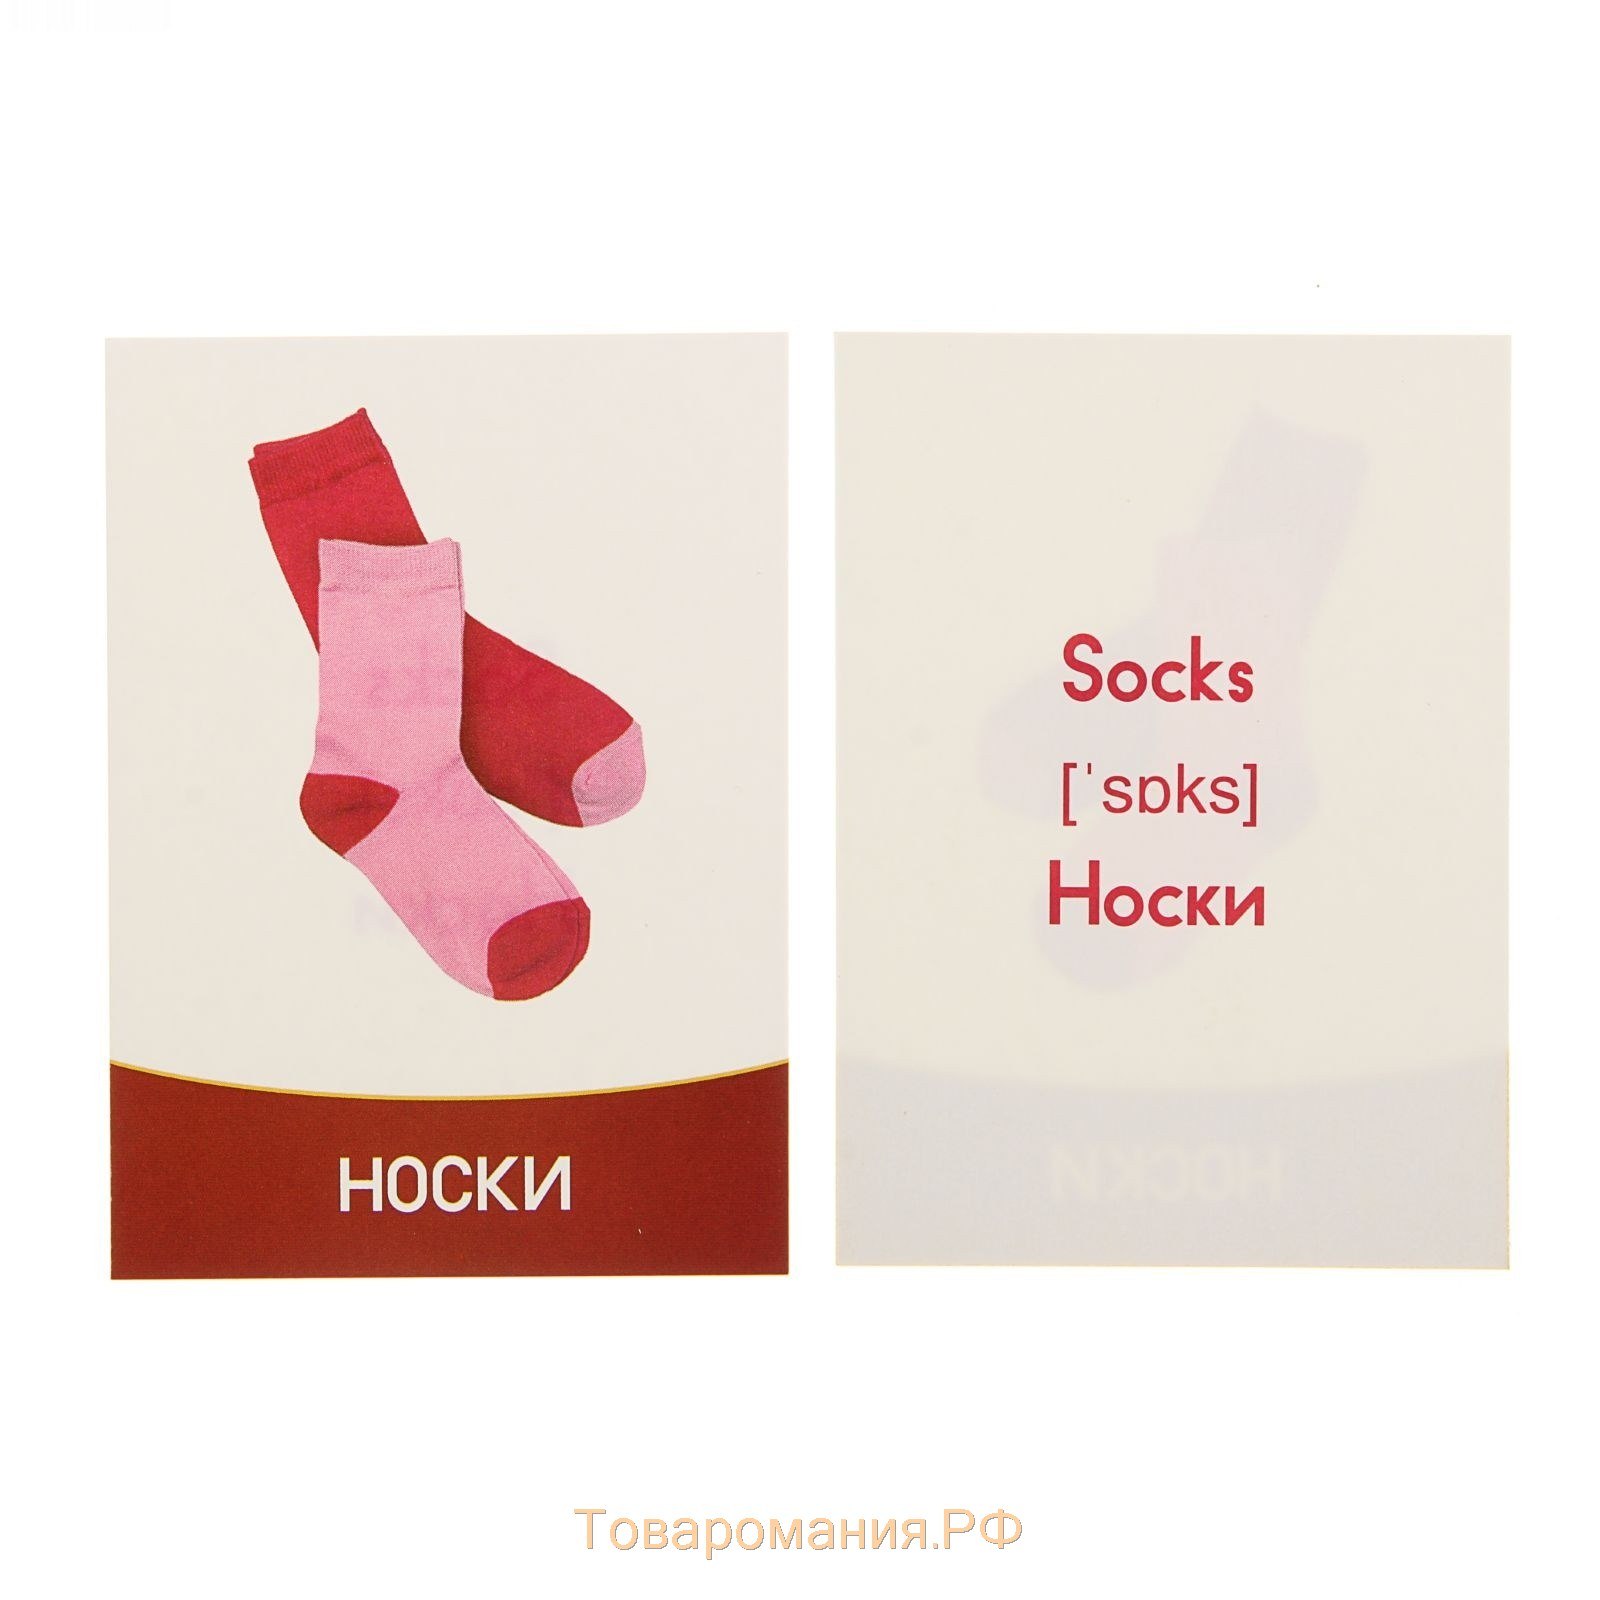 Socks транскрипция. Карточки для носков. Карточки одежда. Карточка носки на английском. Одежда. Обучающие карточки.